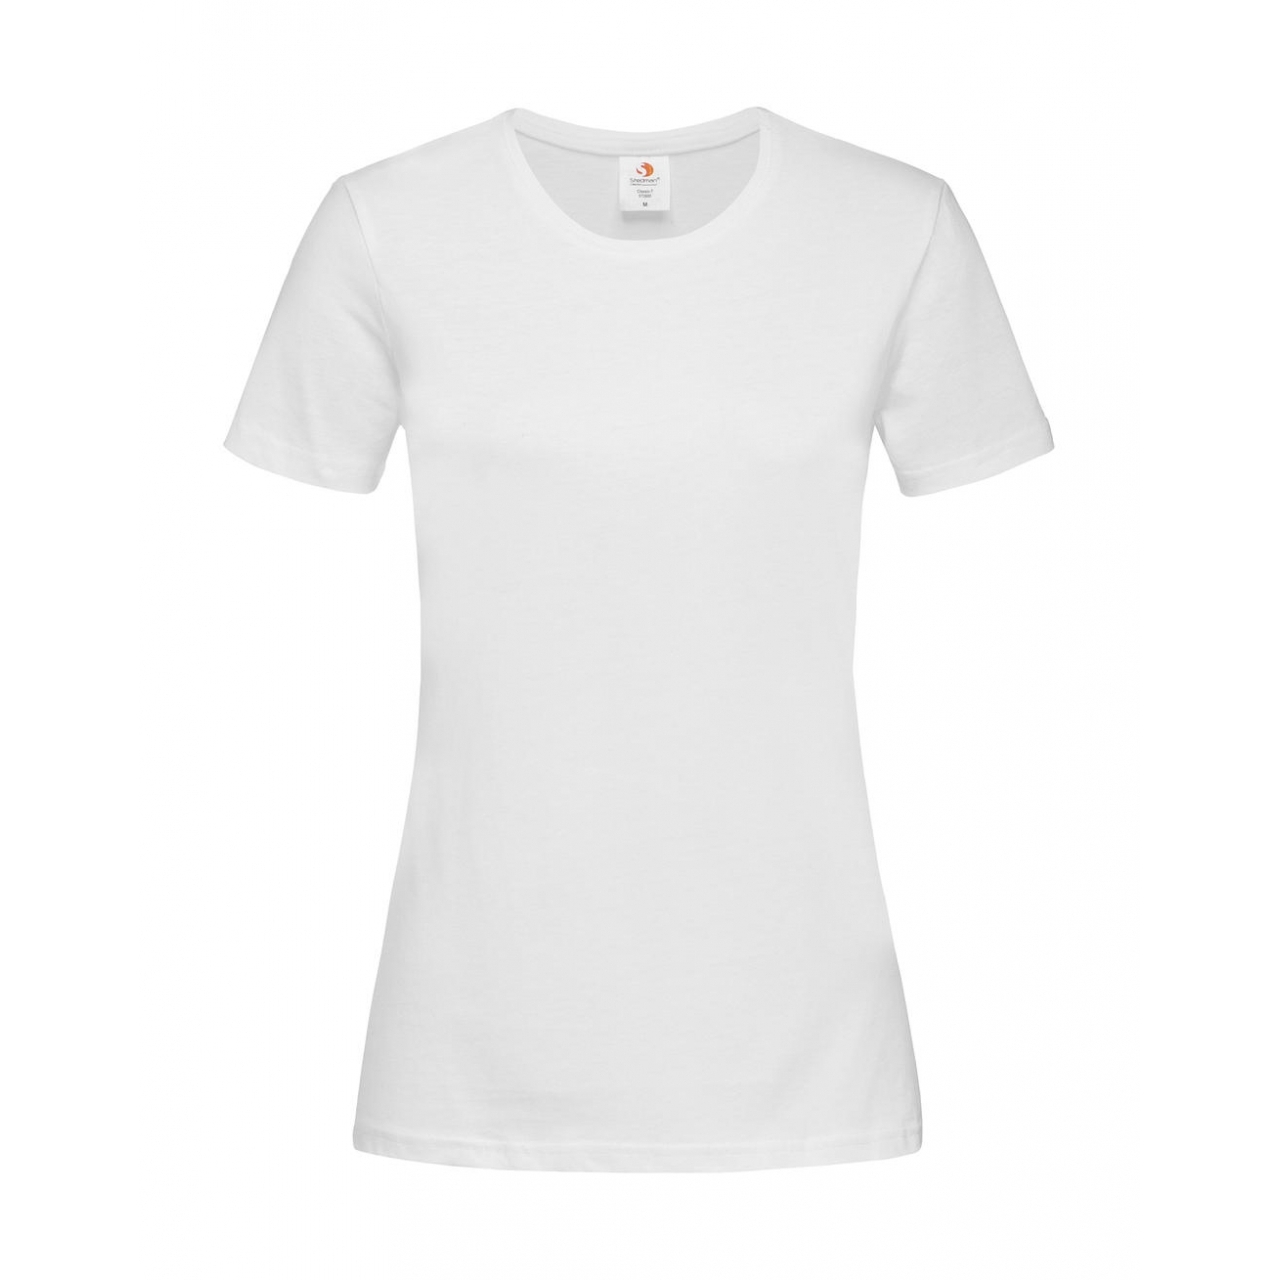 Tričko dámské Stedman Fitted s kulatým výstřihem - bílé, L